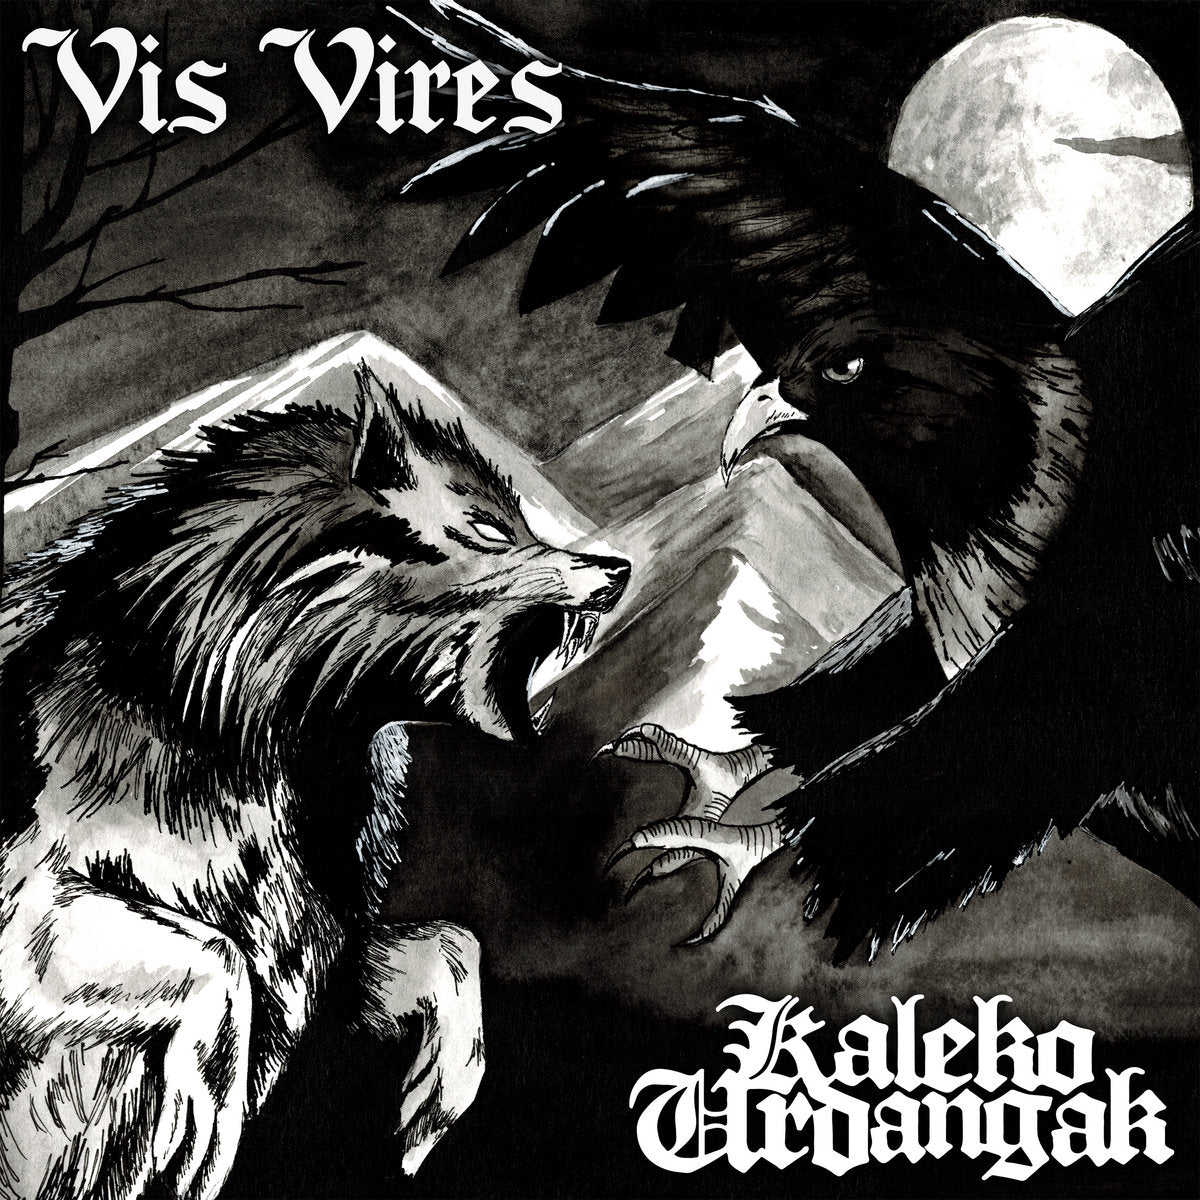 VIS VIRES / KALEKO URDANGAK - SPLIT Vinyl 7"